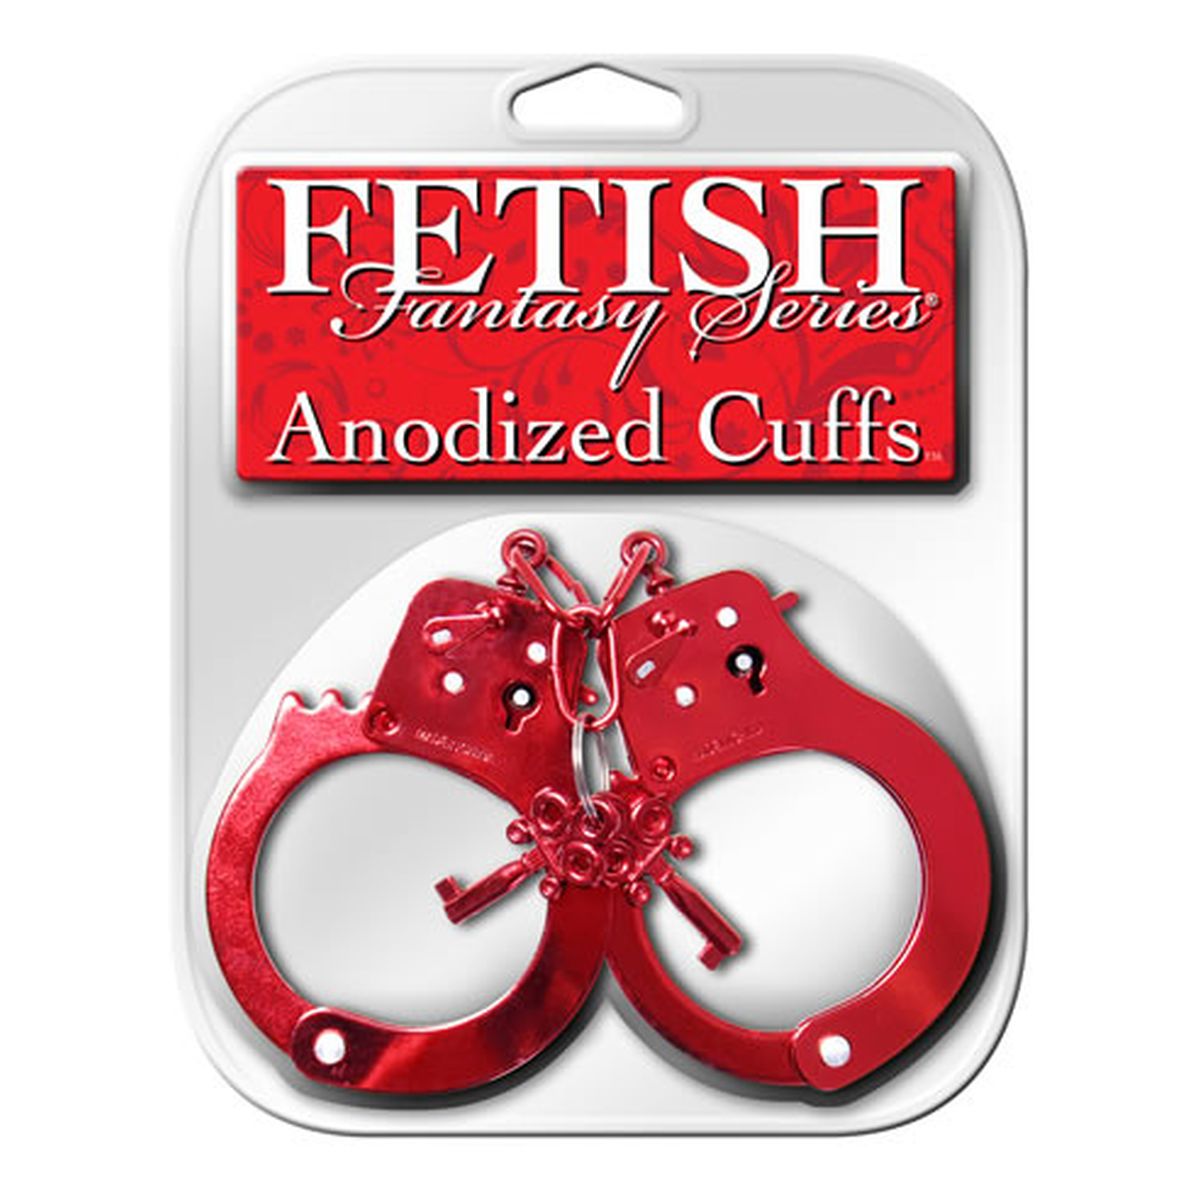 Pipedream Fetish fantasy series anodized cuffs kajdanki galwanizowane czerwone